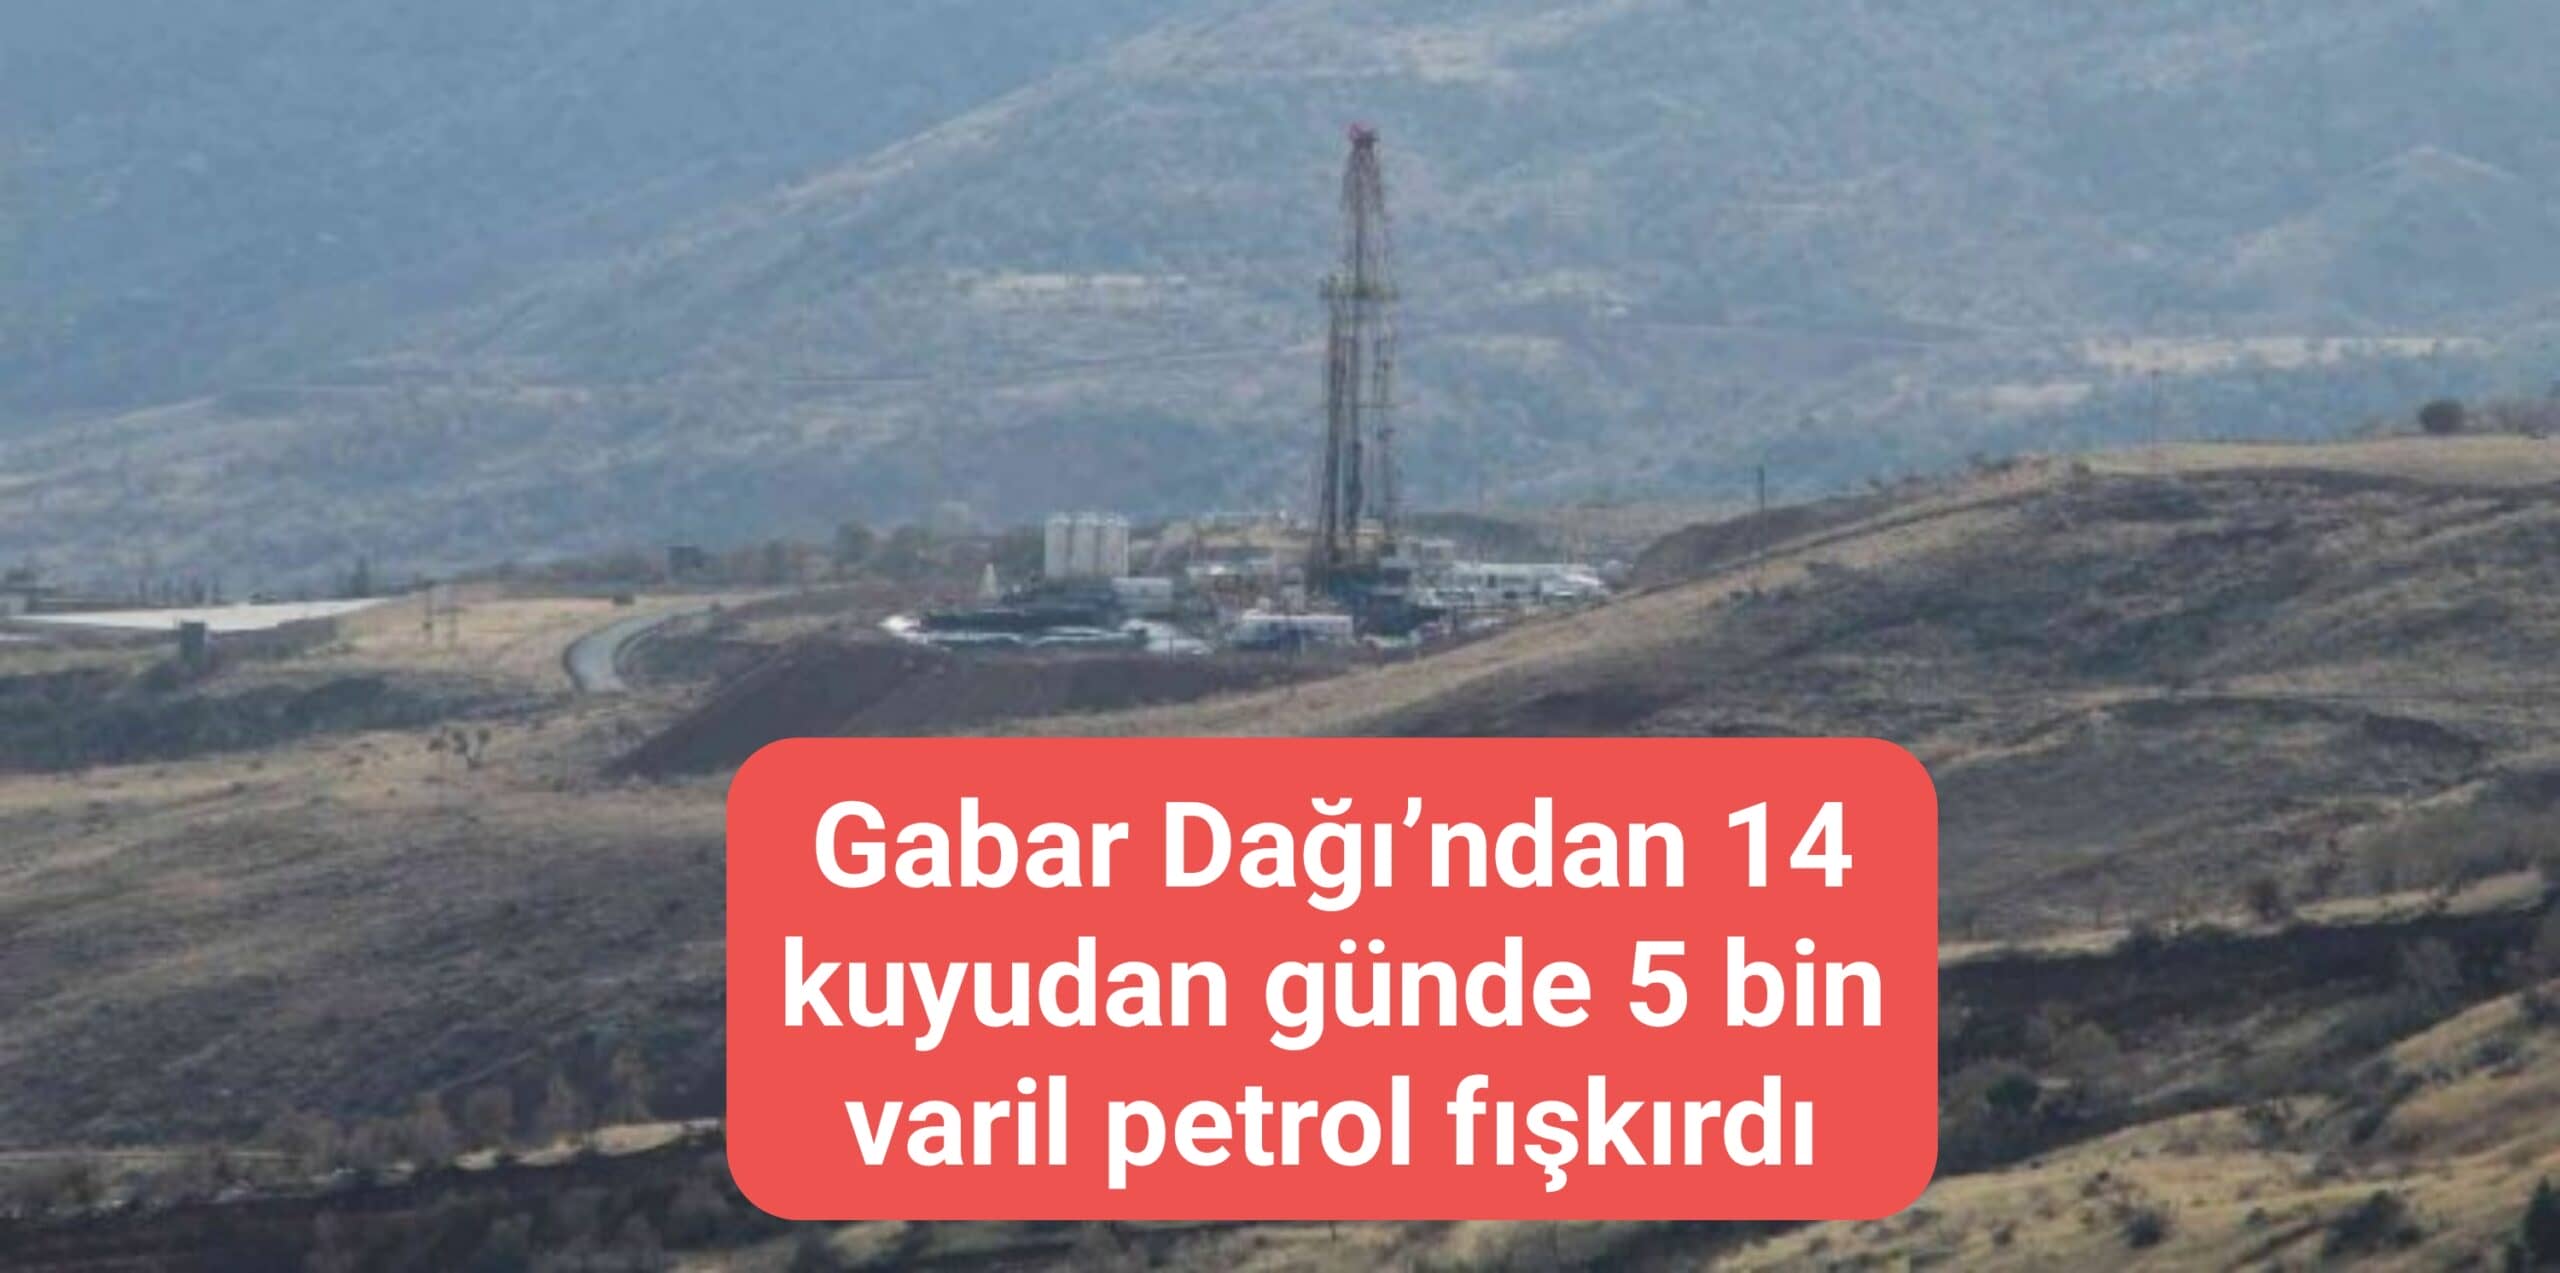 Gabar Dağı'ndan 14 kuyudan günde 5 bin varil petrol fışkırdı